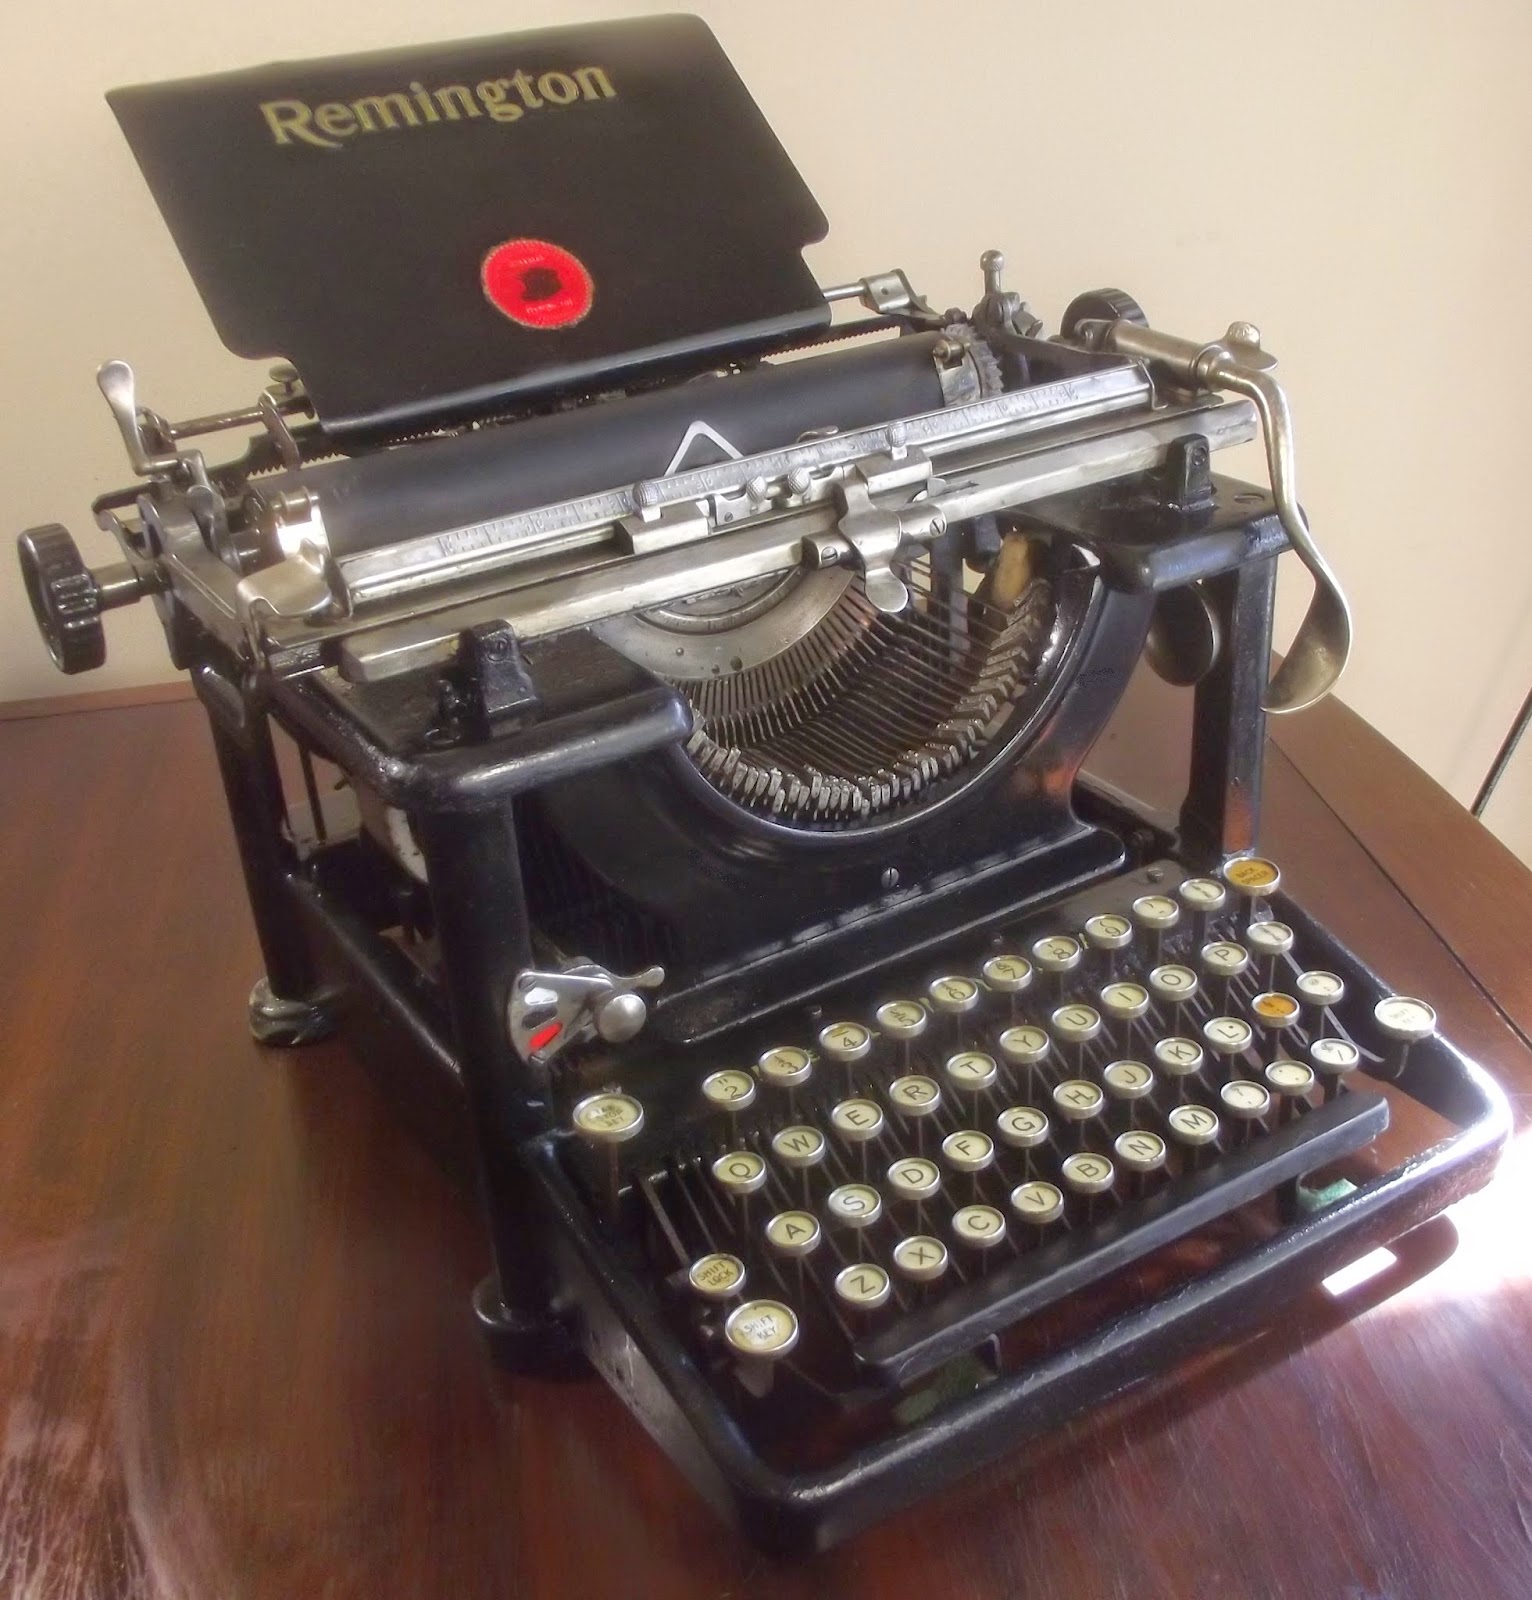 oz.Typewriter: Typewriter Update